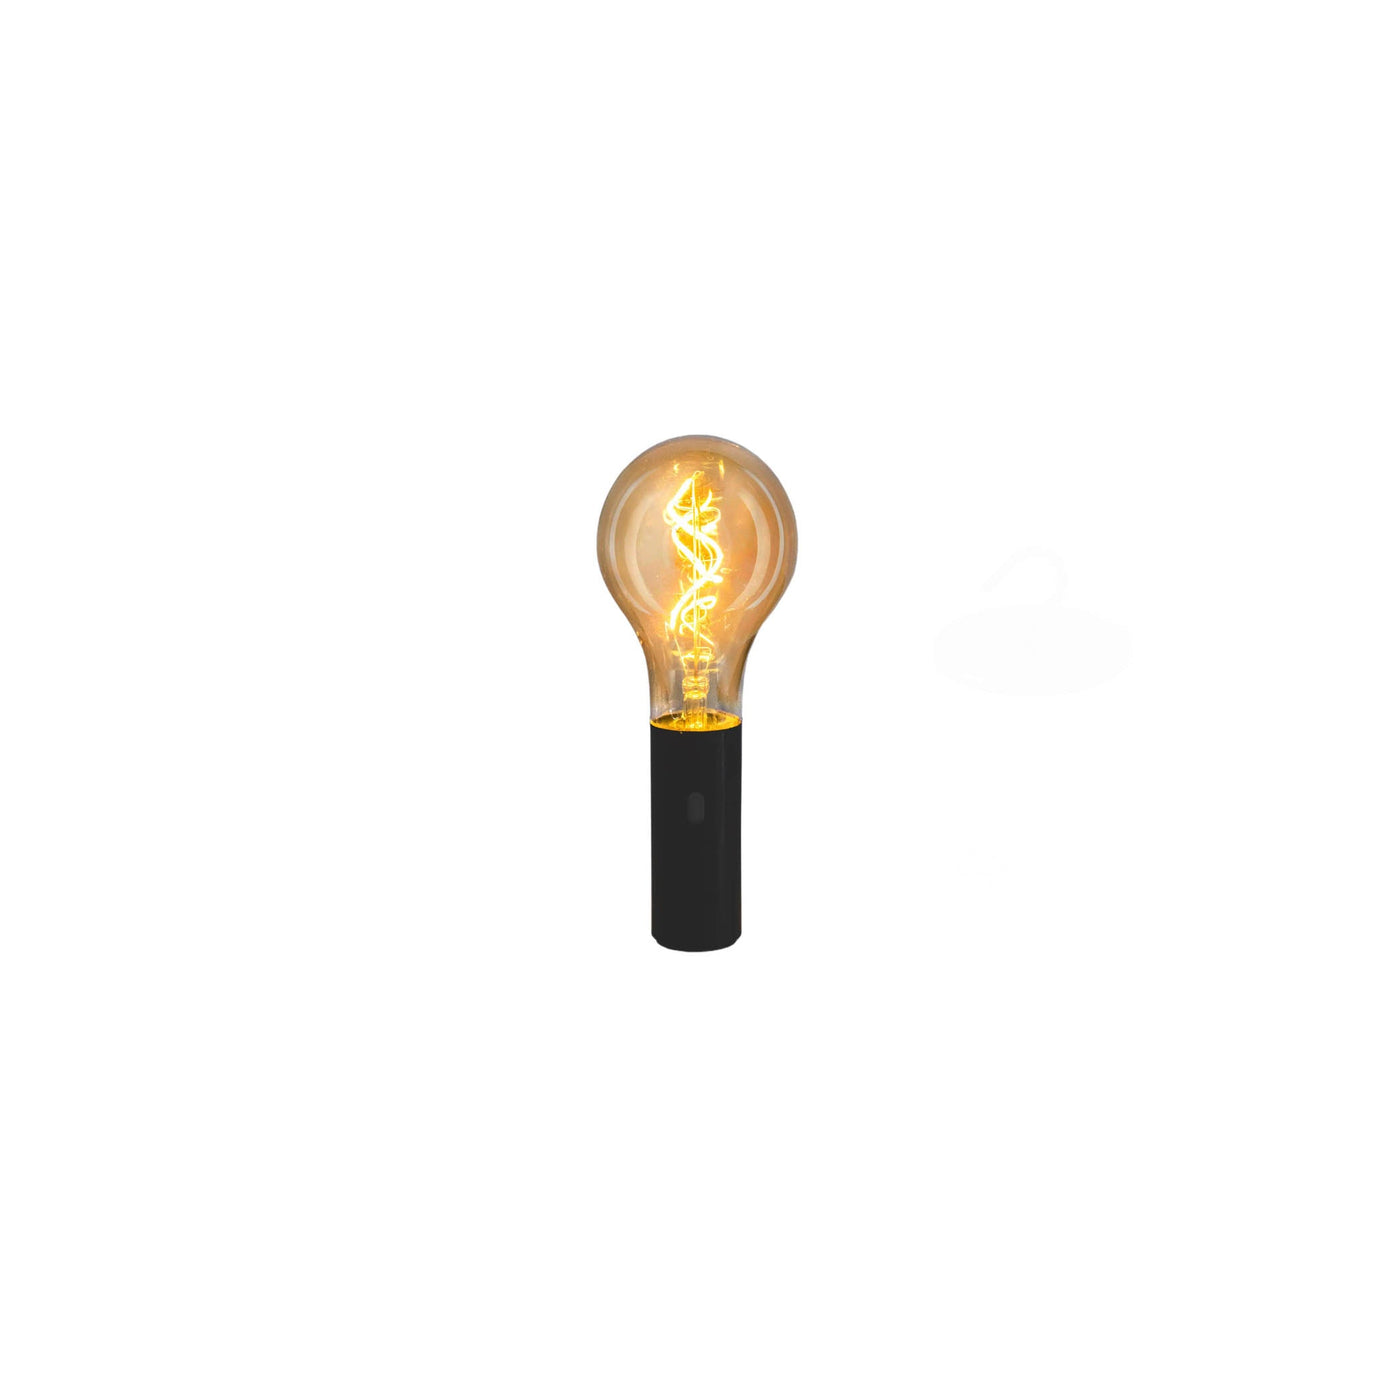 Découvrez l'ampoule portable sans fil Edy 100 de Newgarden : base aimantée, filament LED, style verre fumé, idéale pour un éclairage flexible et durable.